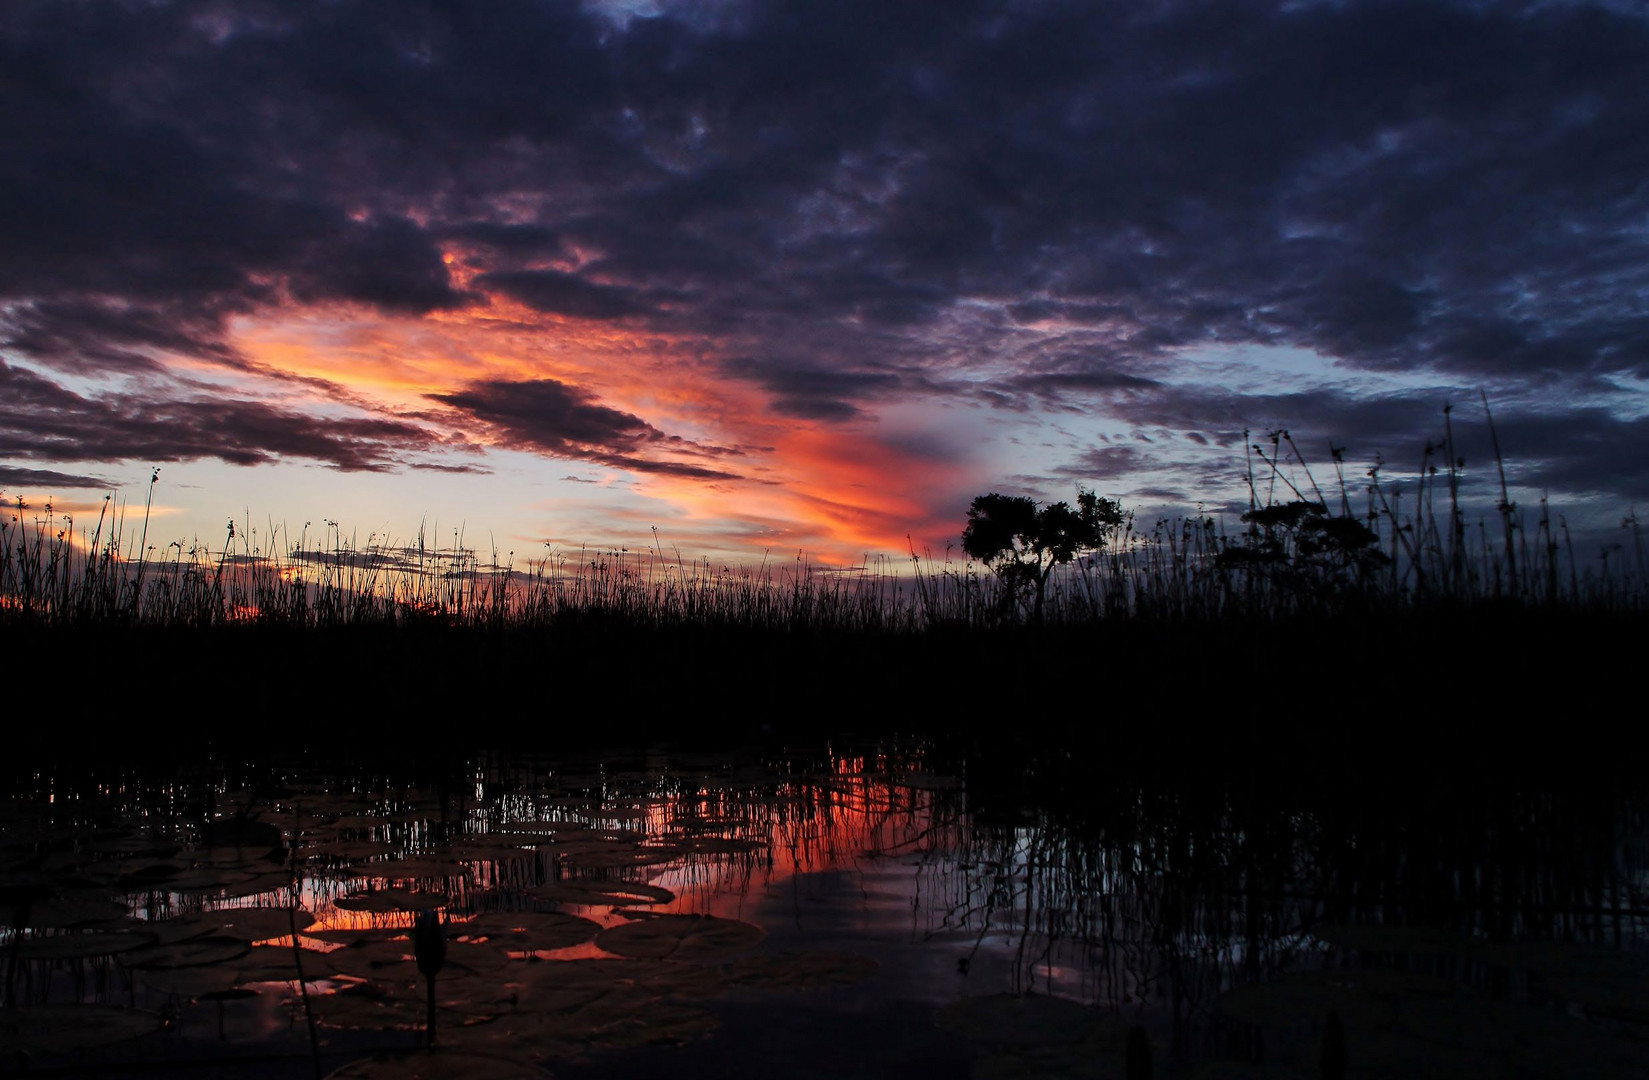 Sonnenuntergang im Delta